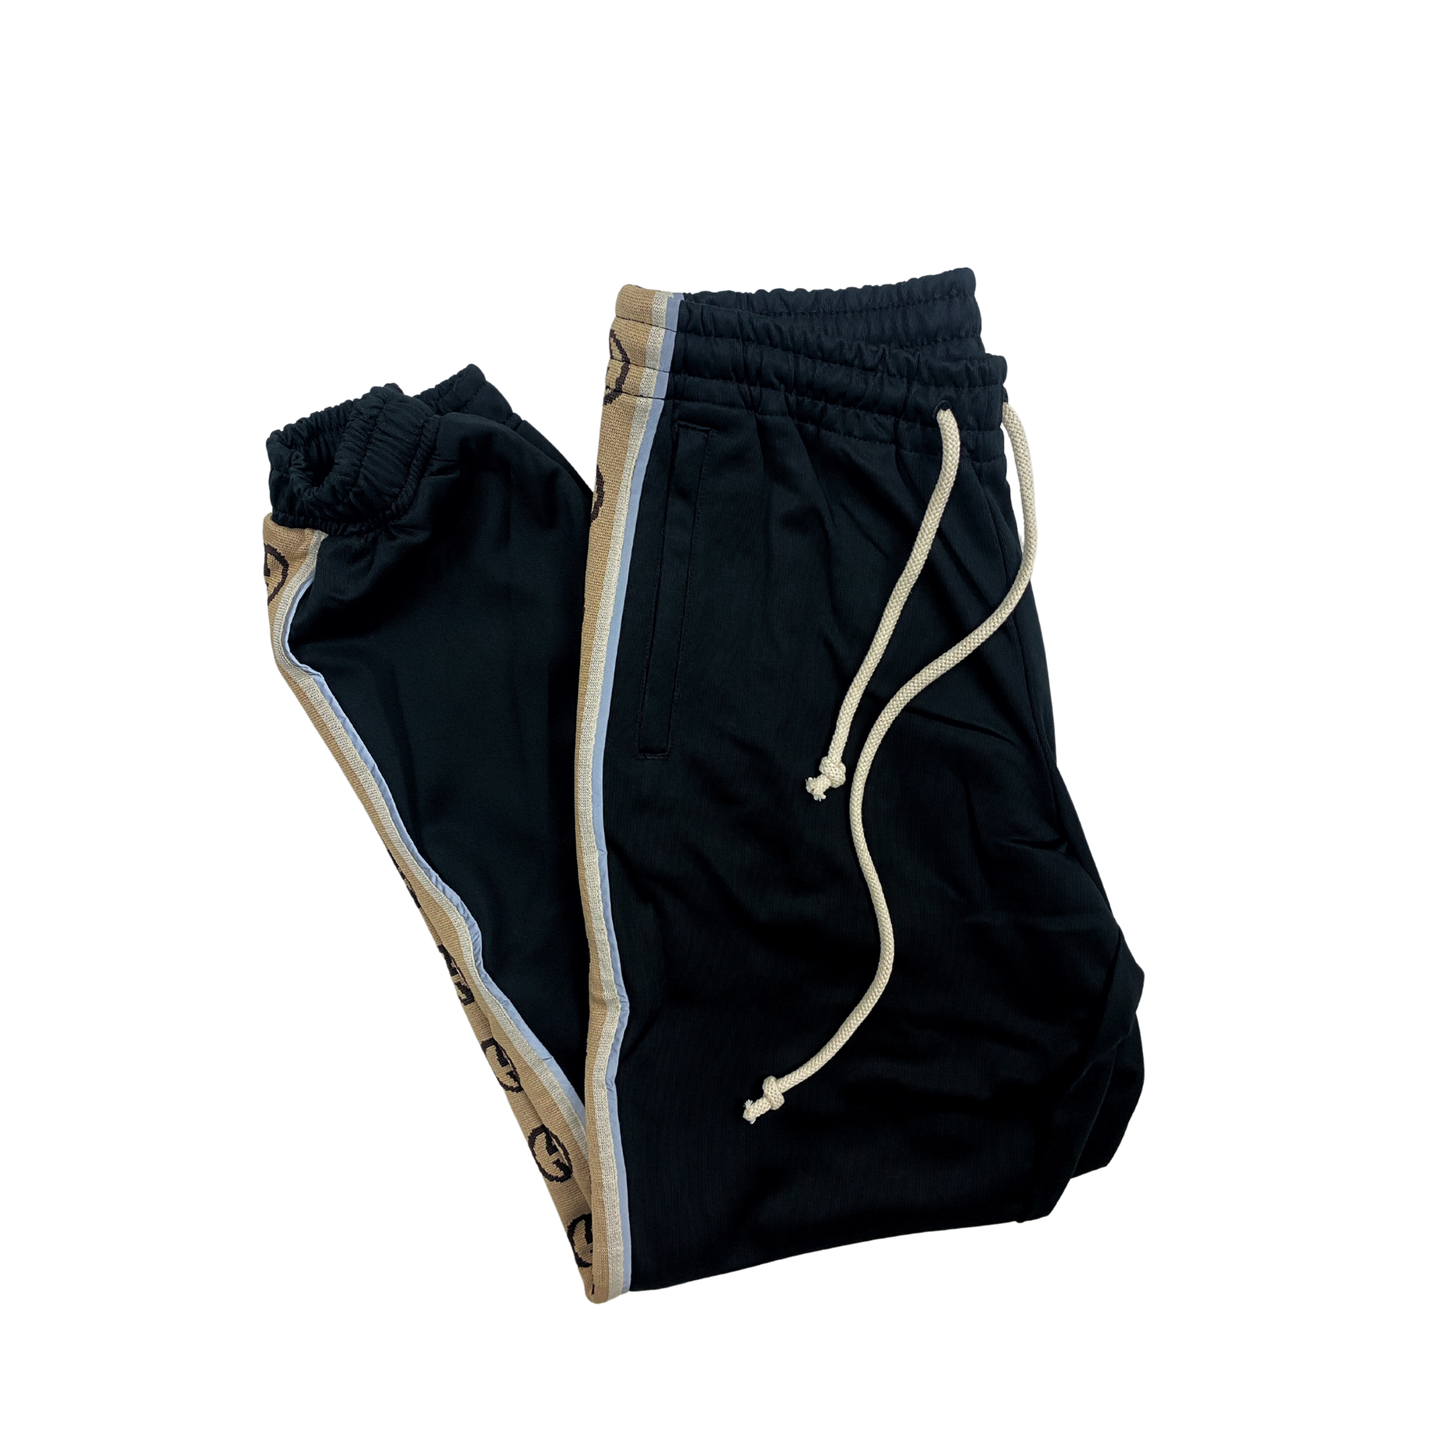 Pantalon de jogging en jersey technique ample Gucci noire